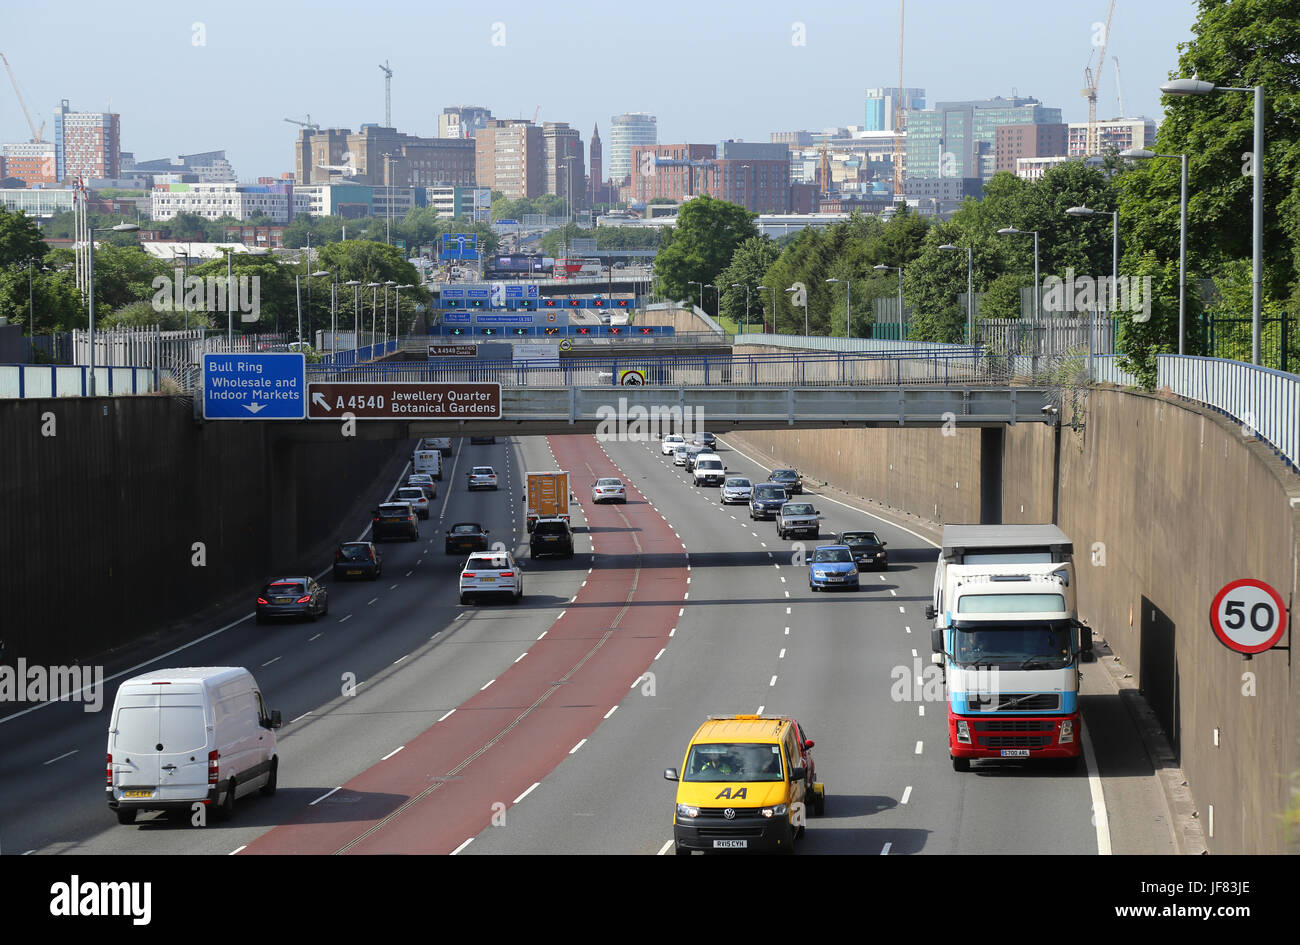 La A38M Aston Expressway, guardando verso lo skyline del centro cittadino di Birmingham, UK. Foto Stock